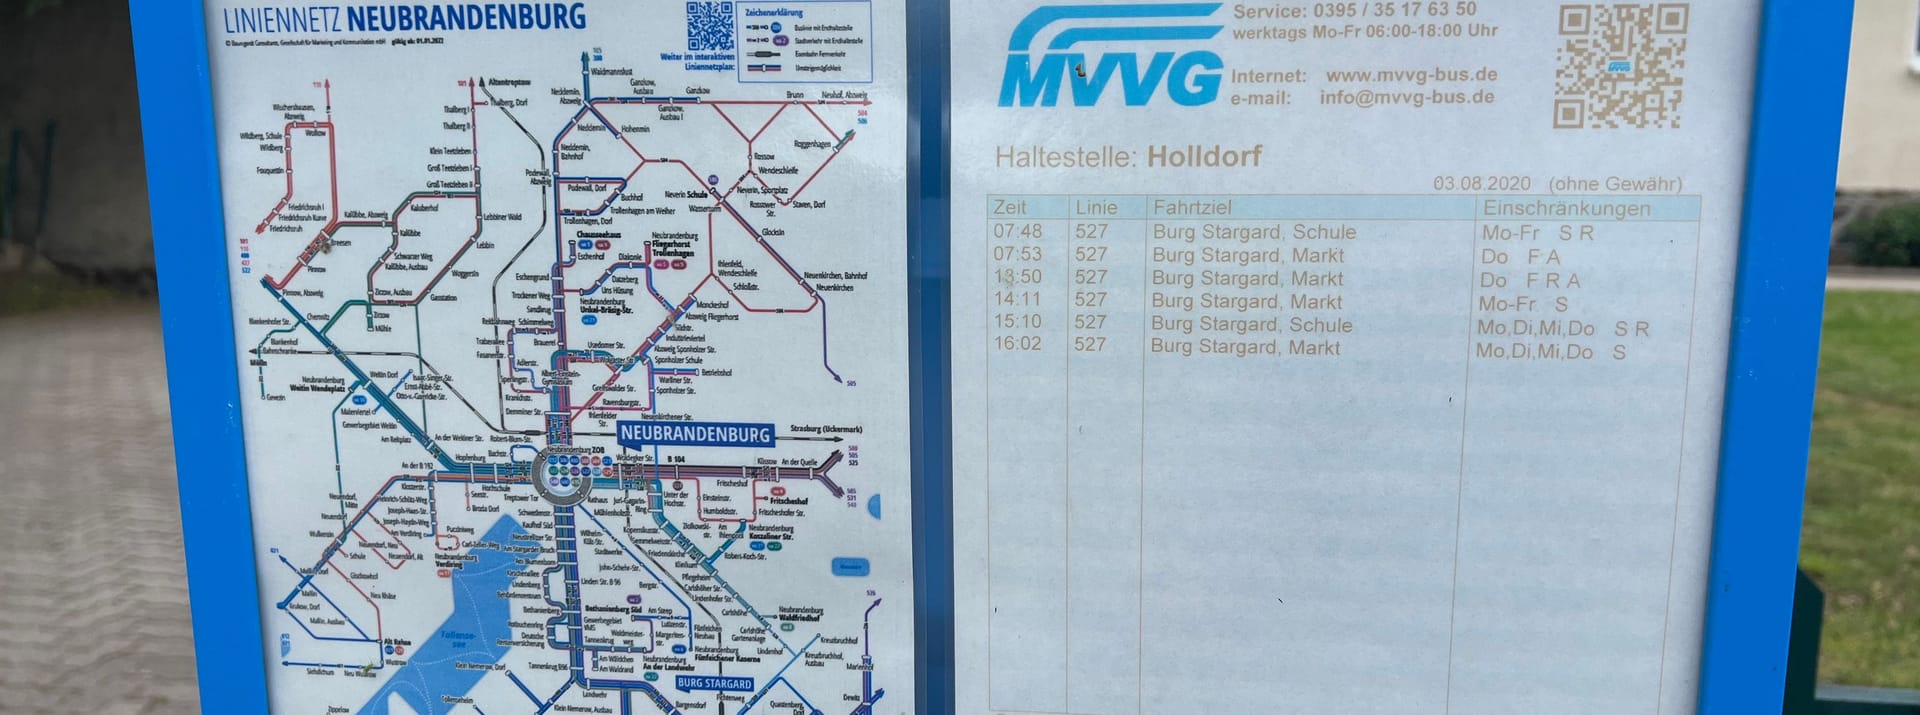 Busfahrplan in Burg Stargard: Kein Anschluss nach 16 Uhr.